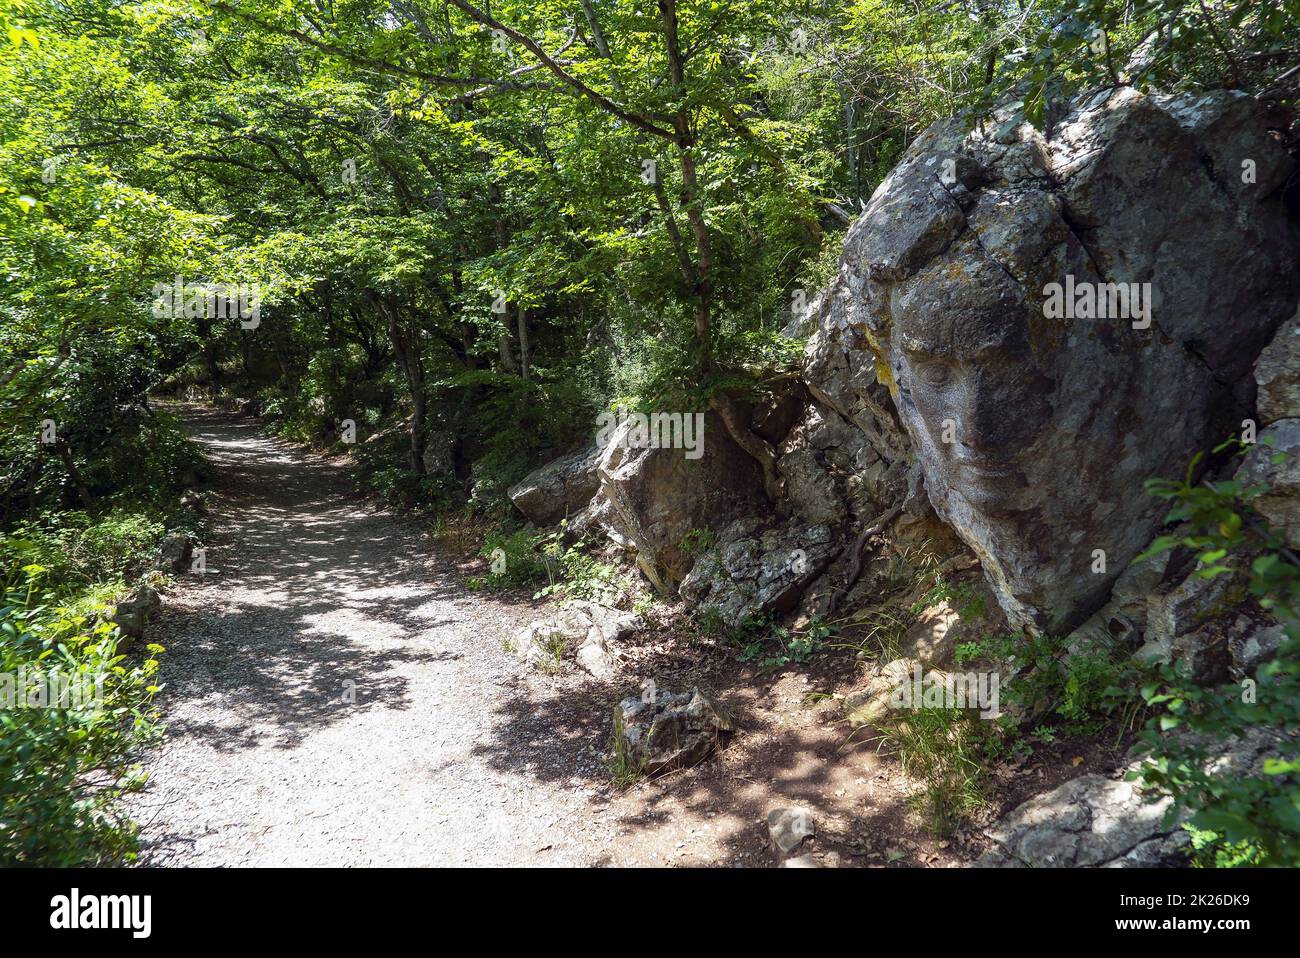 Ein Gesicht, das in einen großen Stein gemeißelt wurde, entlang eines sonnigen Weges. Krim. Jalta. Stockfoto